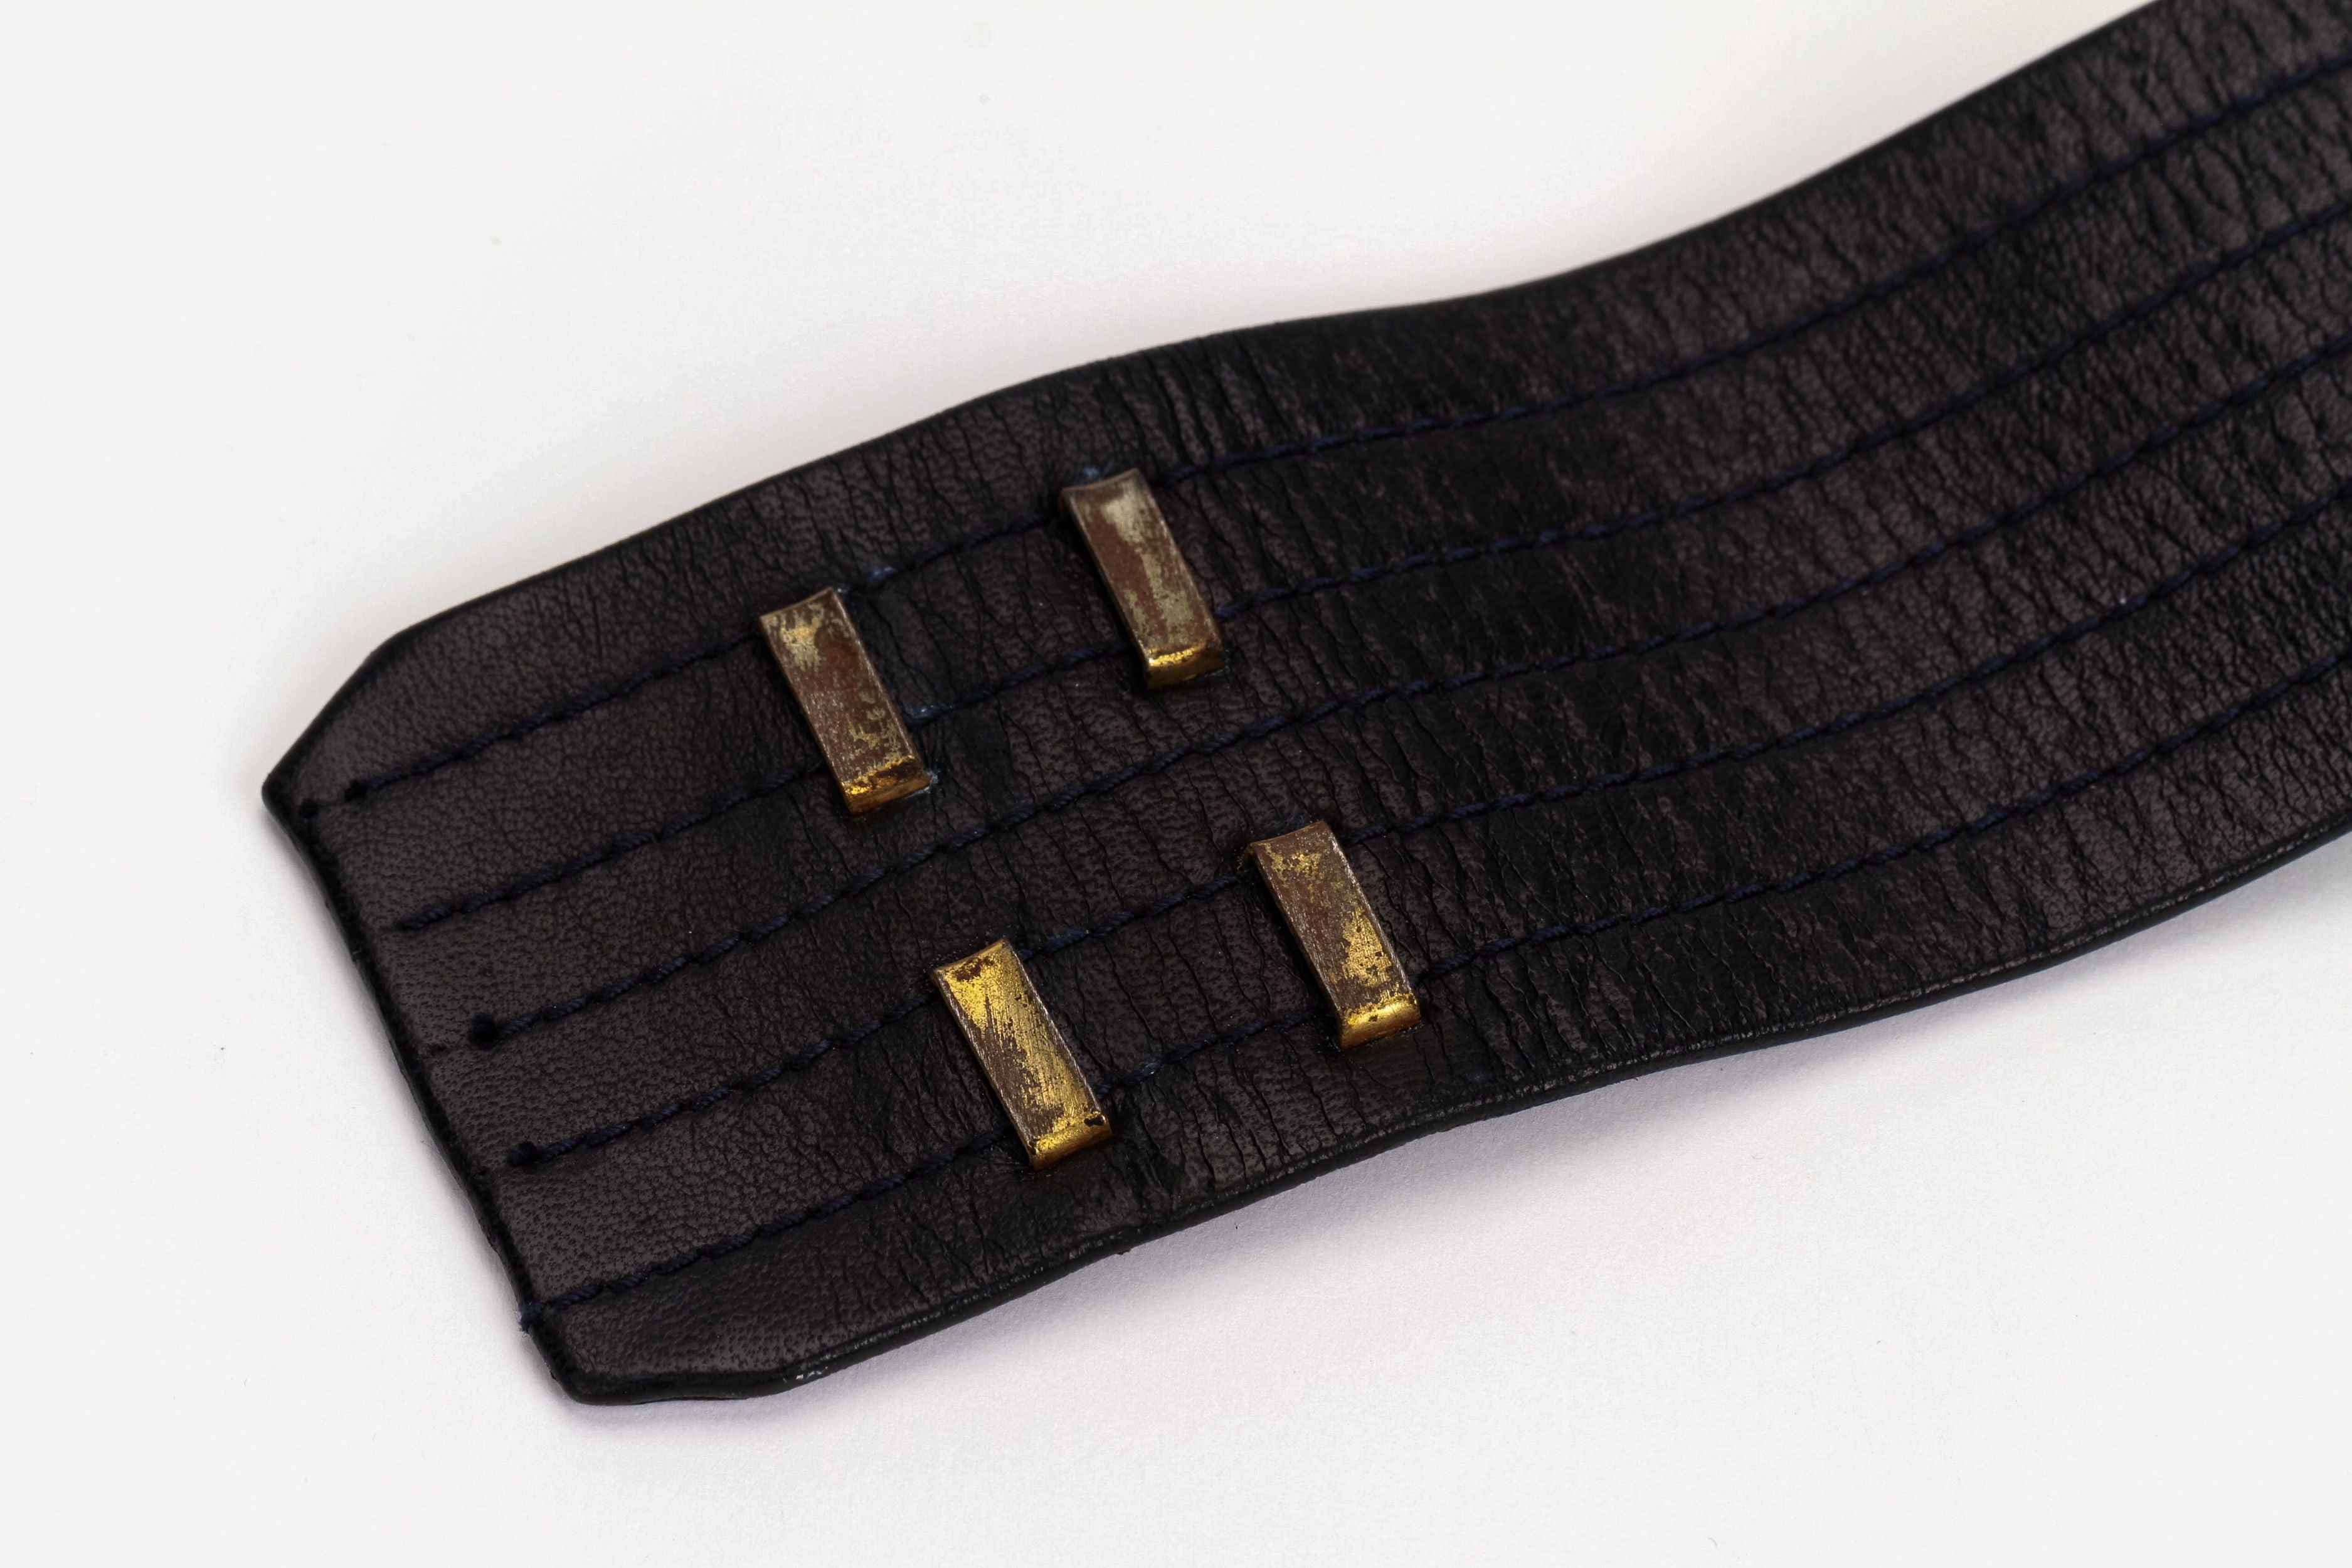 Chanel Belt Buckle - 92 For Sale on 1stDibs  chanel buckle belt, chanel  belt buckle womens, chanel belt buckle women's